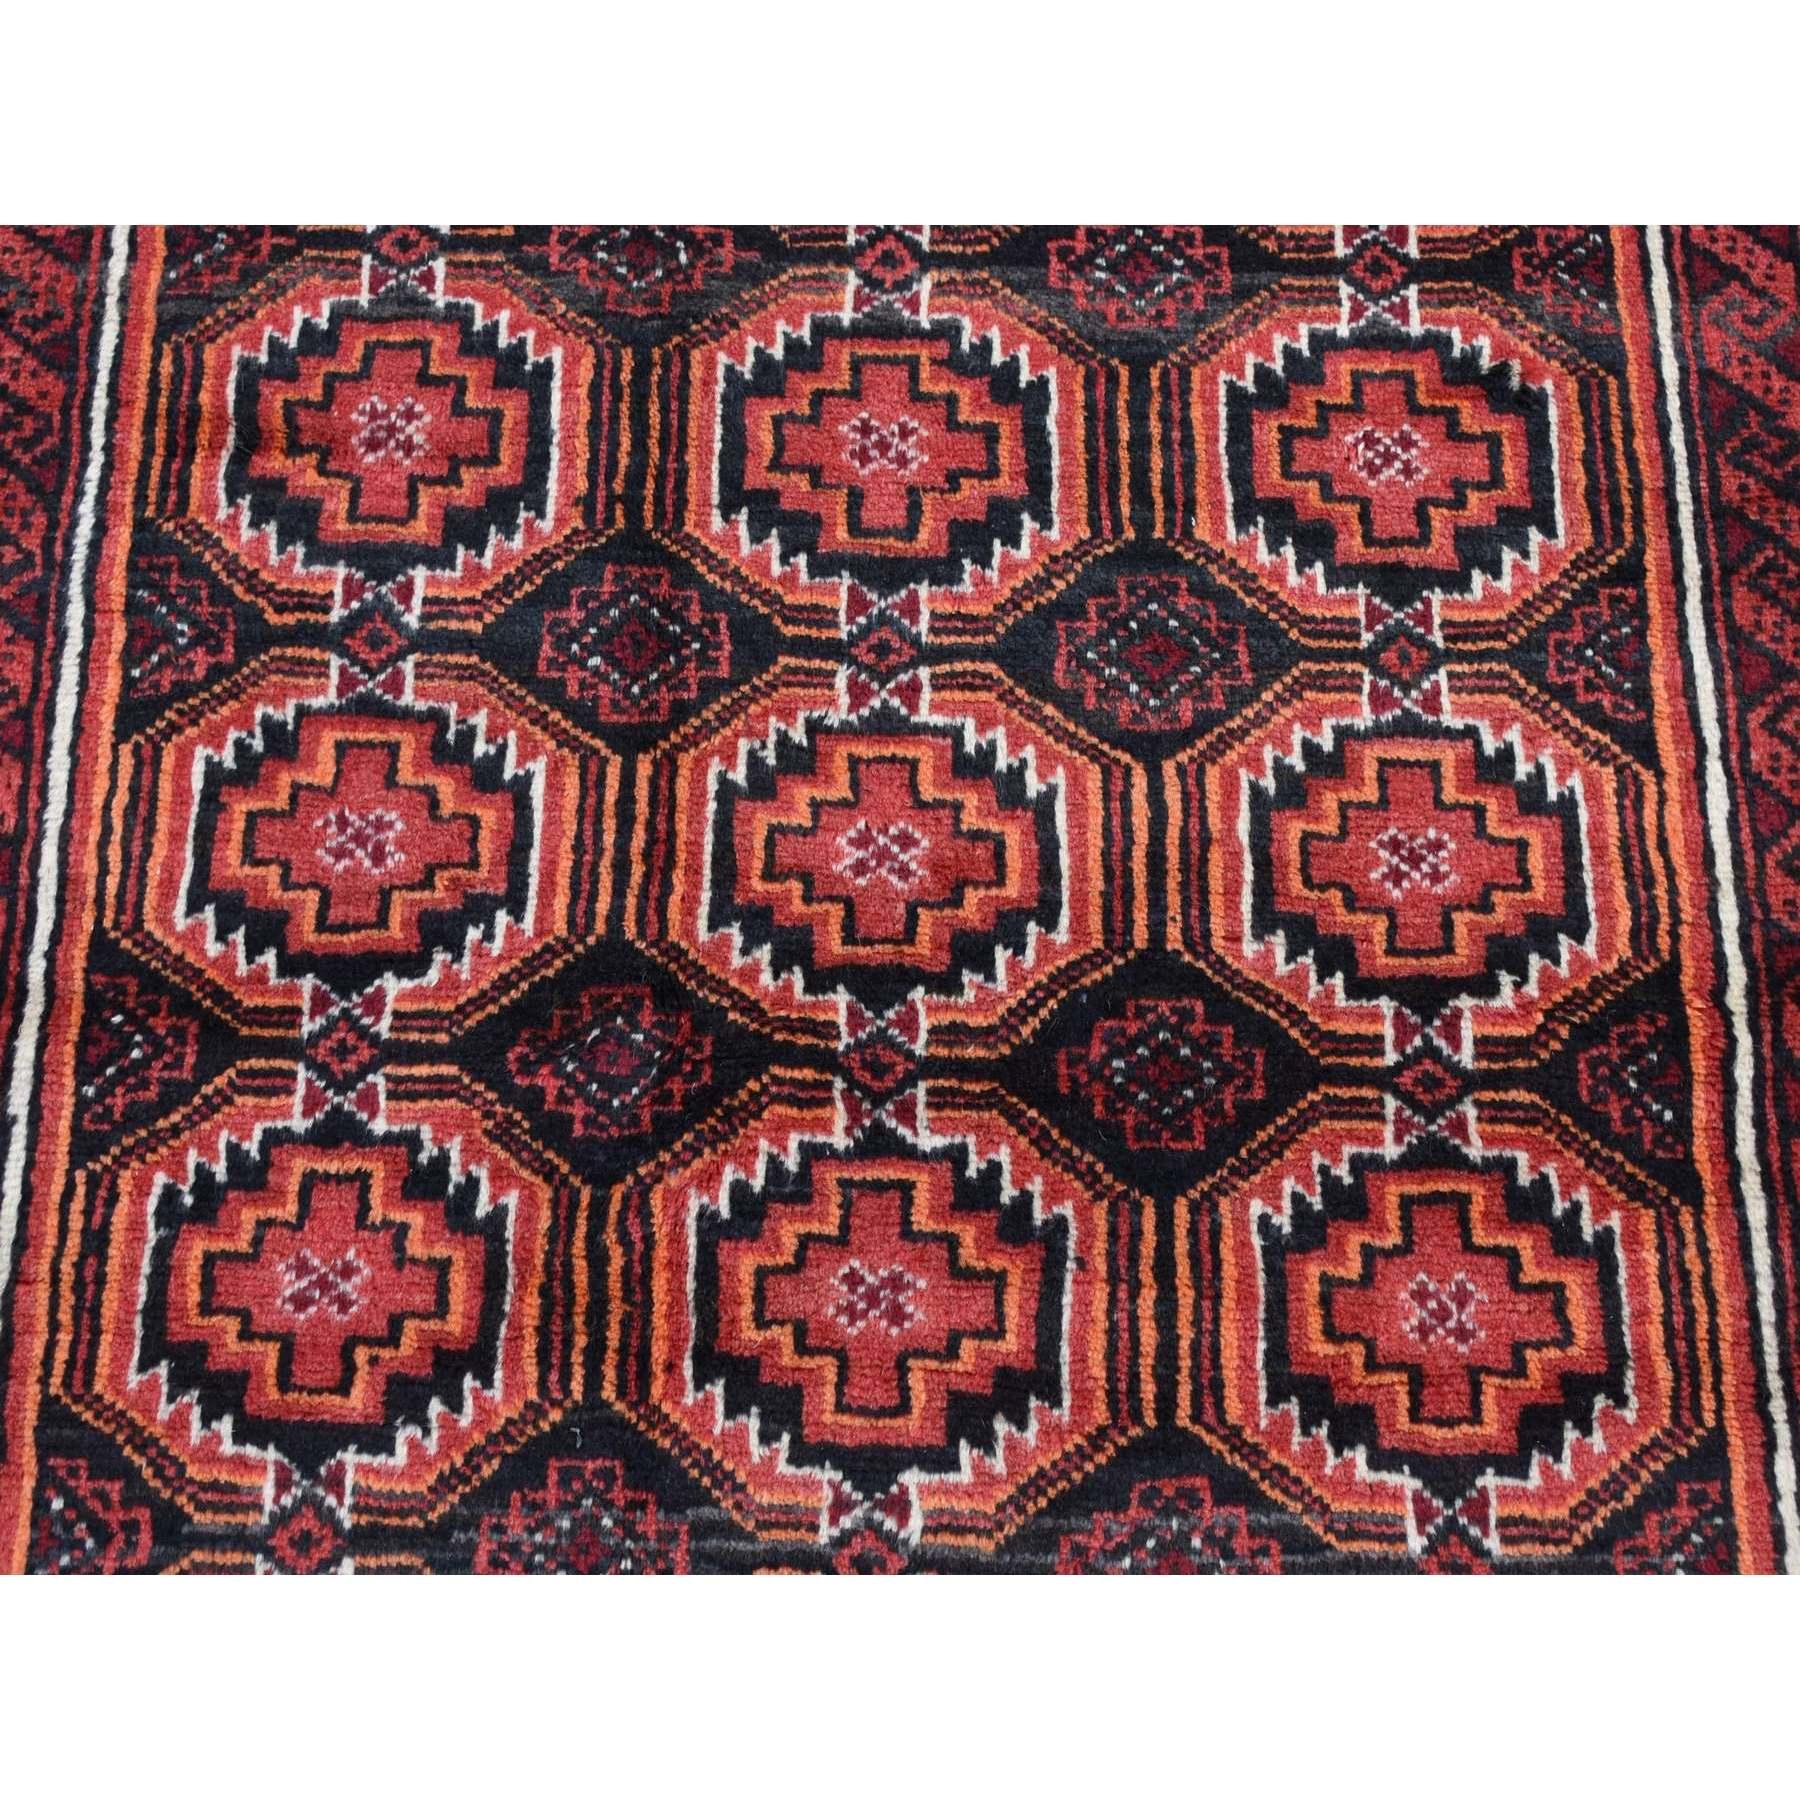 Prismatisch roter persischer, handgeknüpfter Vintage-Teppich aus reiner Wolle, rein, sauber und ohne Verschleiß im Angebot 2